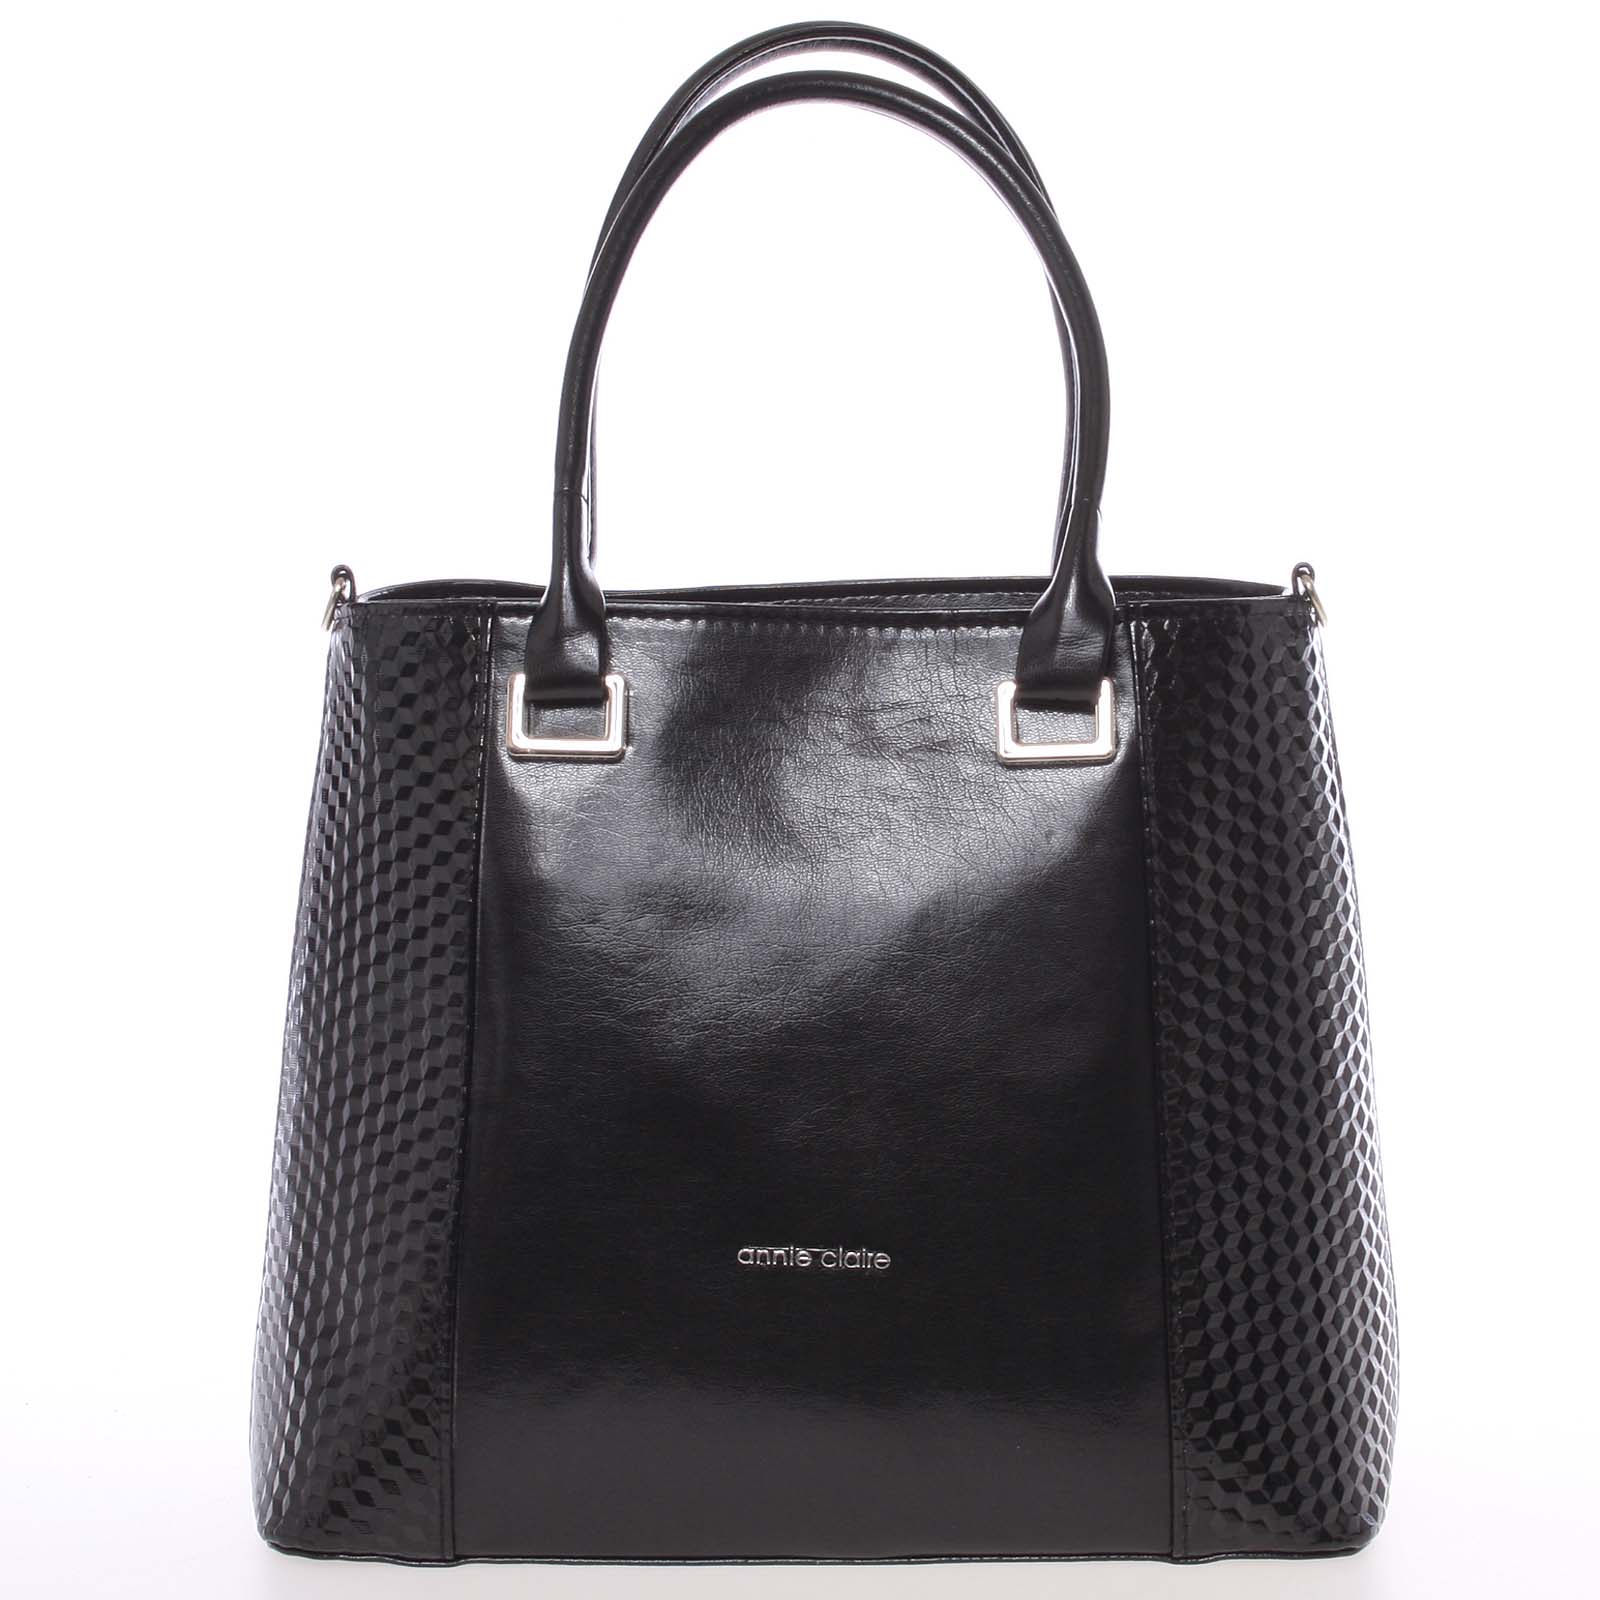 Dámska hladká čierna kabelka so vzorom - Annie Claire 7081